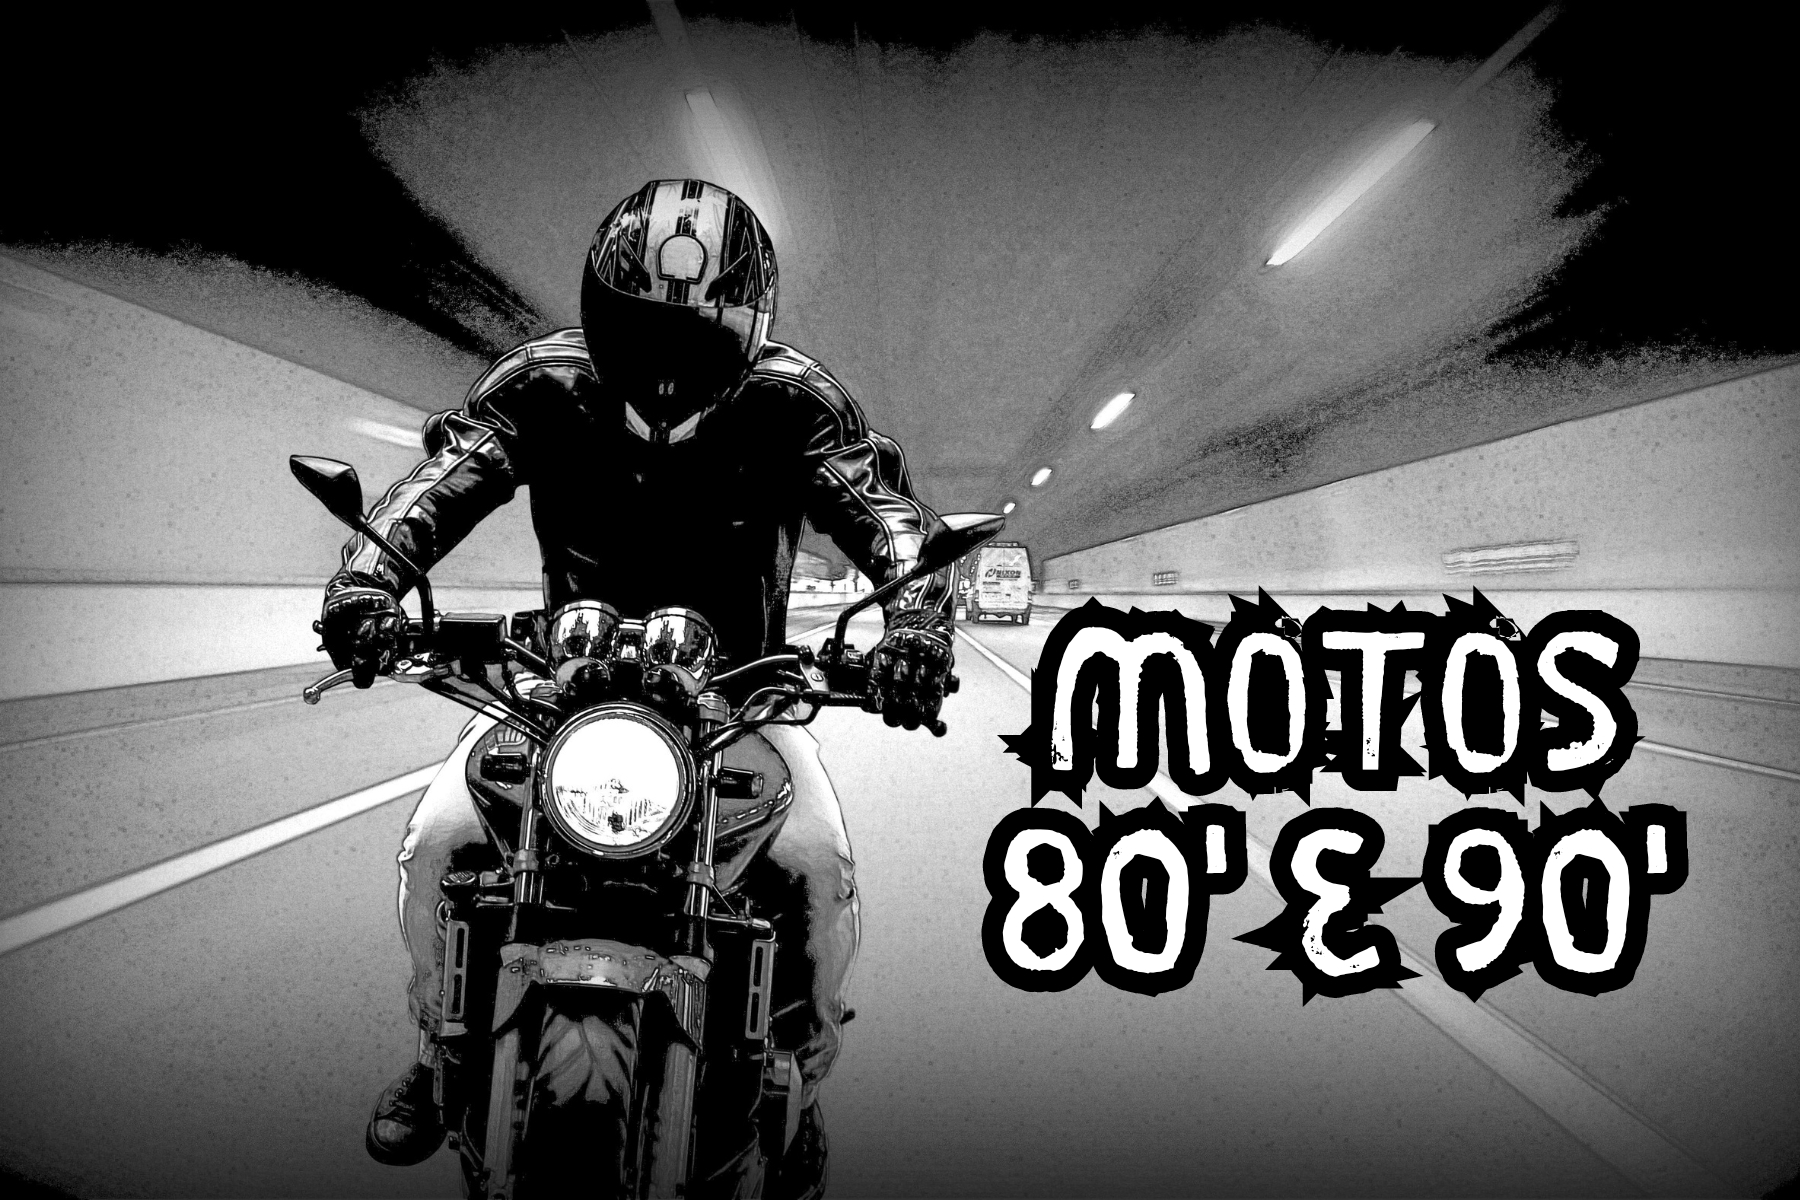 Descubra as 10 motos que marcaram os anos 80 e 90 no Brasil, ícones de inovação e design que ainda são lembrados pelos fãs de duas rodas.